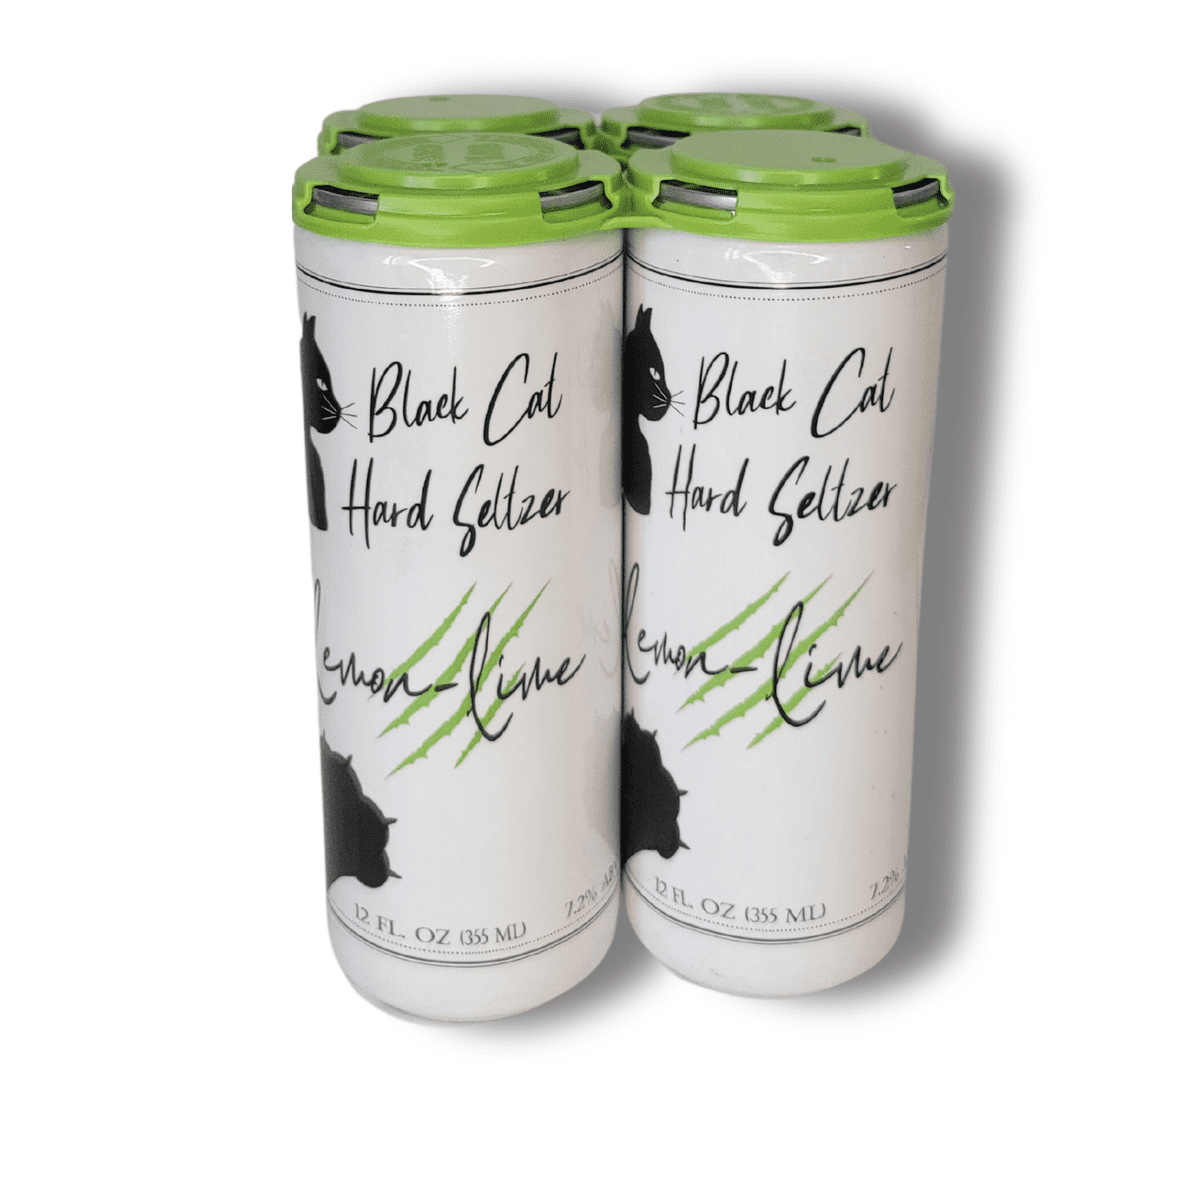 Black Dog - Lemon Lime Seltzer - 12oz Sleek Cans - 4-pack